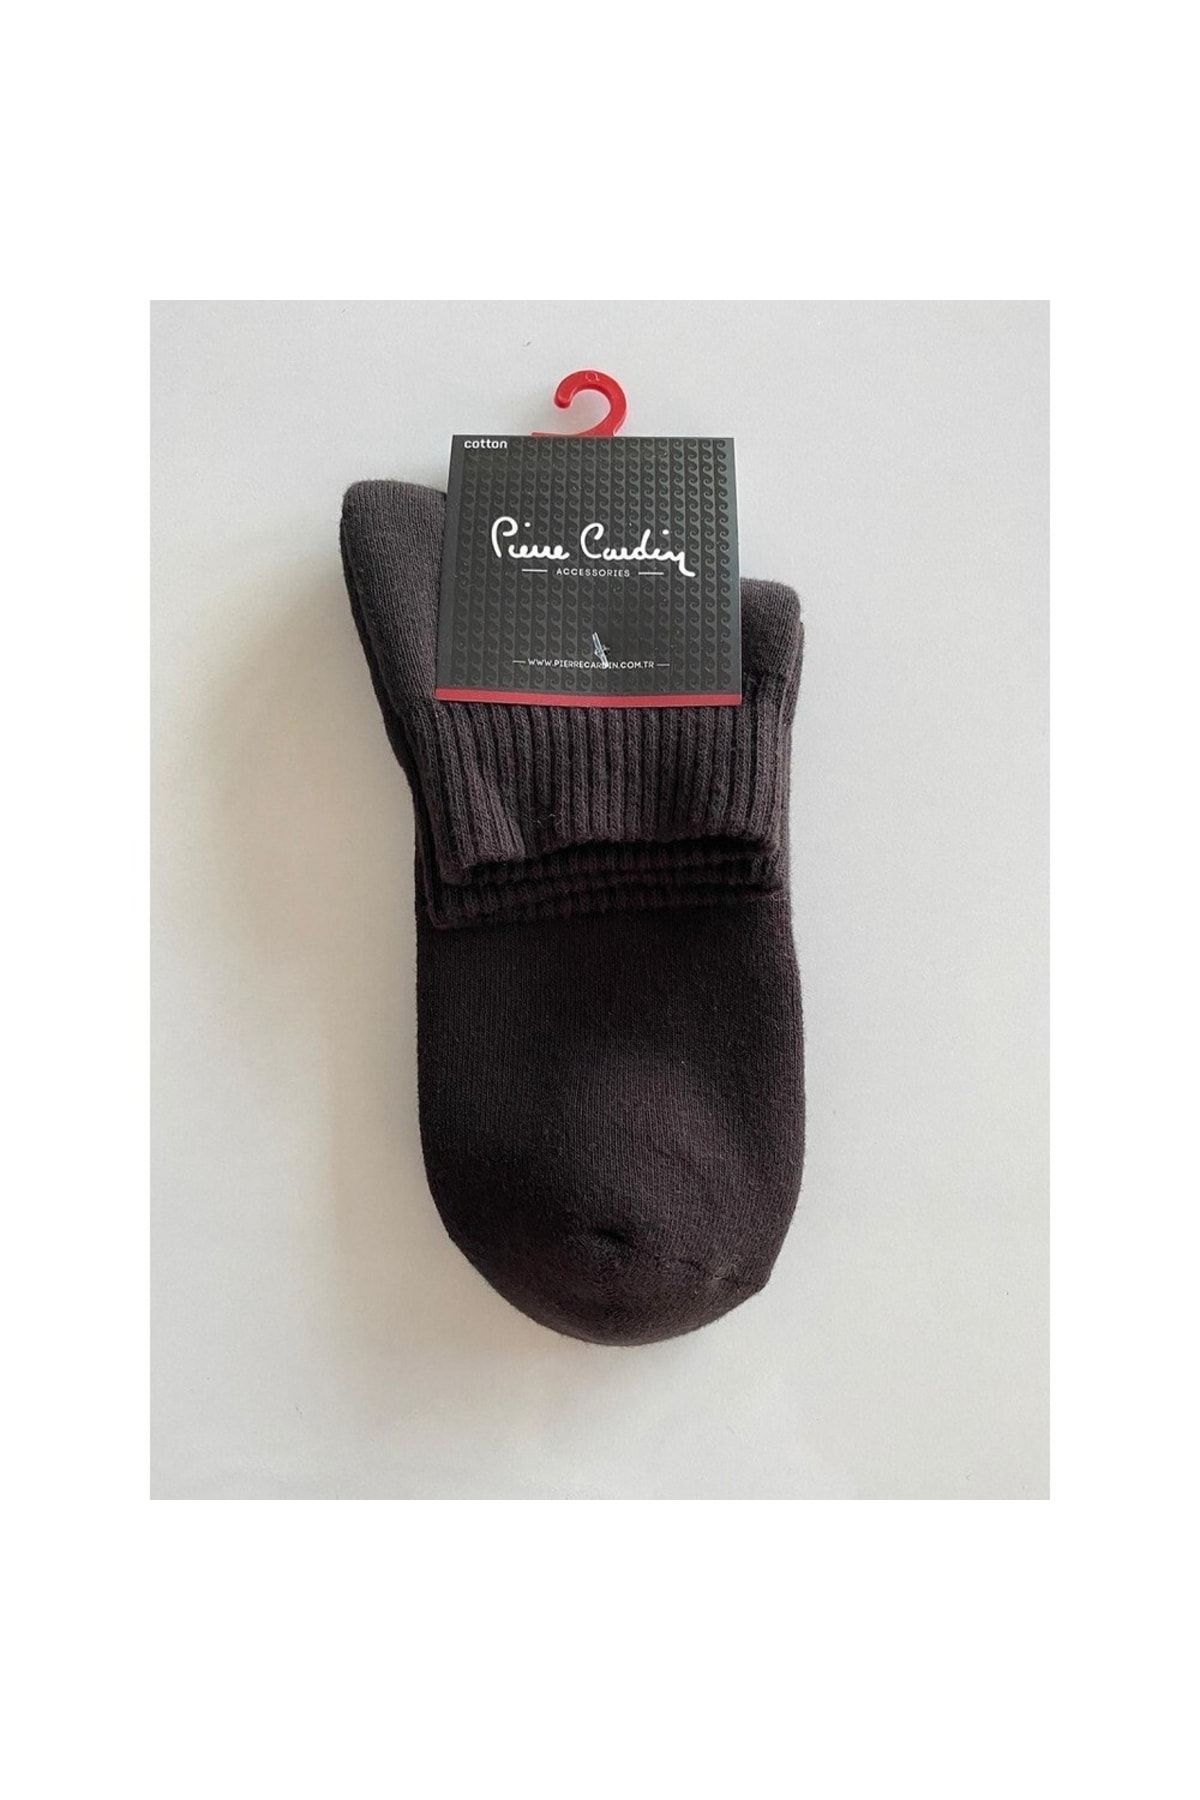 Pierre Cardin Pier Cardin Erkek 40-44 Thermal Havlu 3 Lü Çorap Pıer2080-3